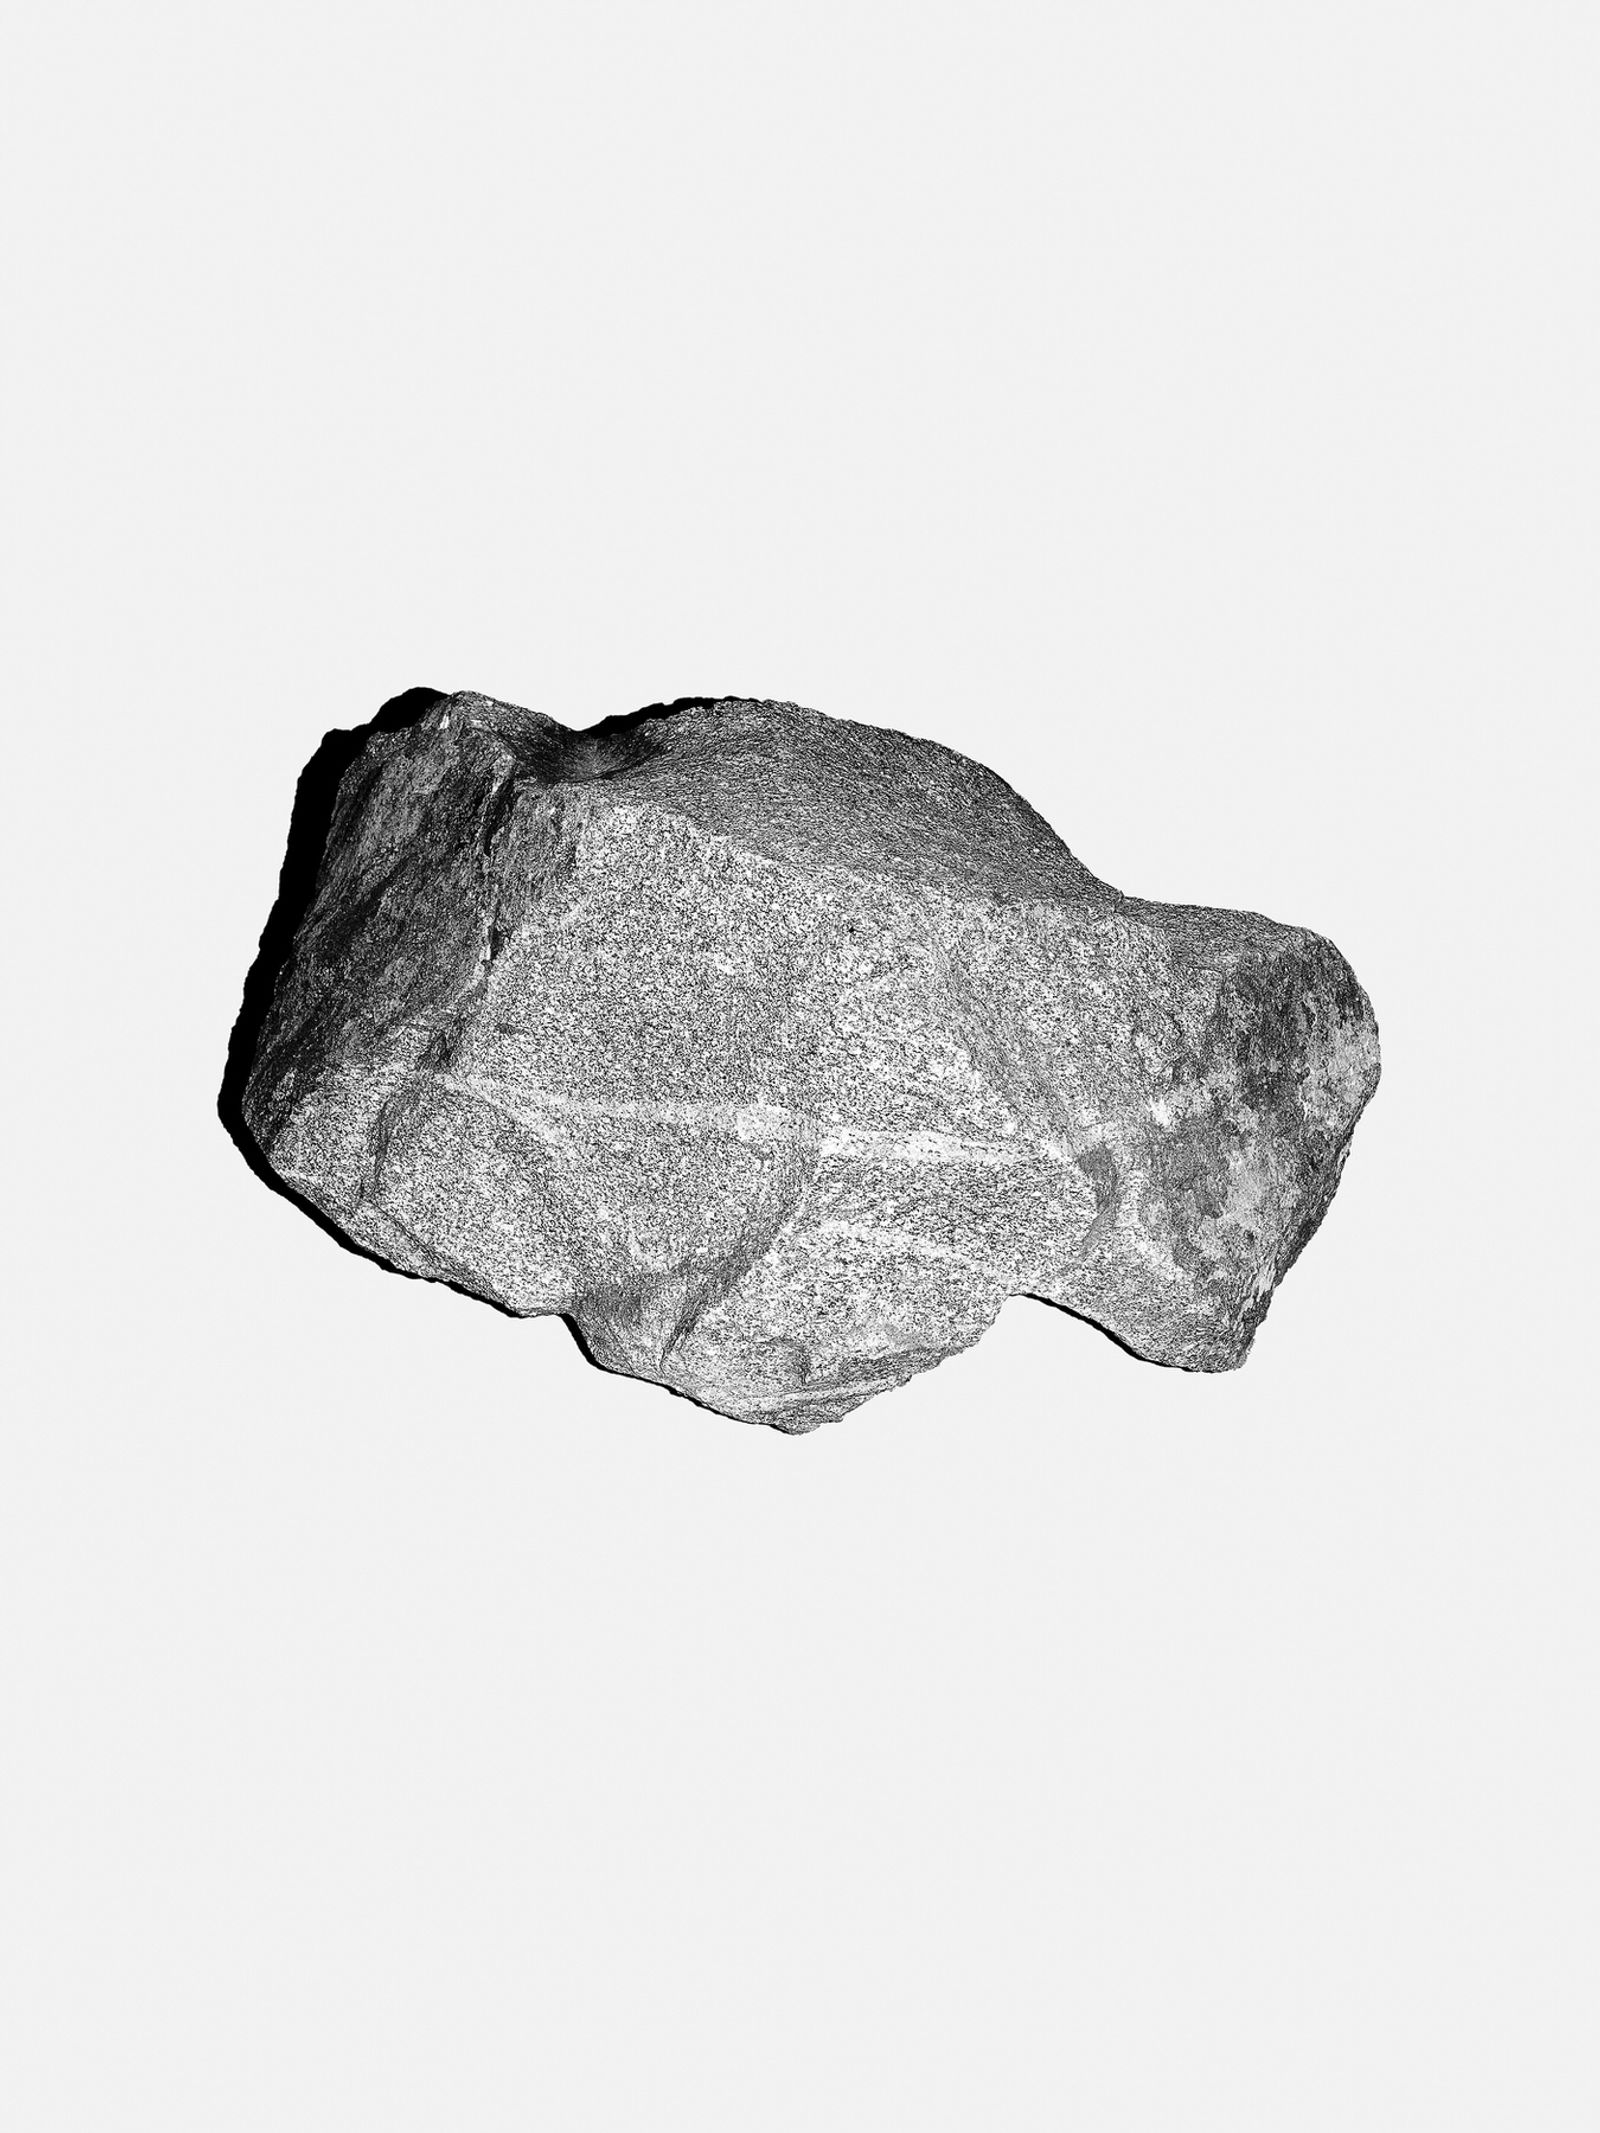 © Felix Schöppner - Asteroid-C